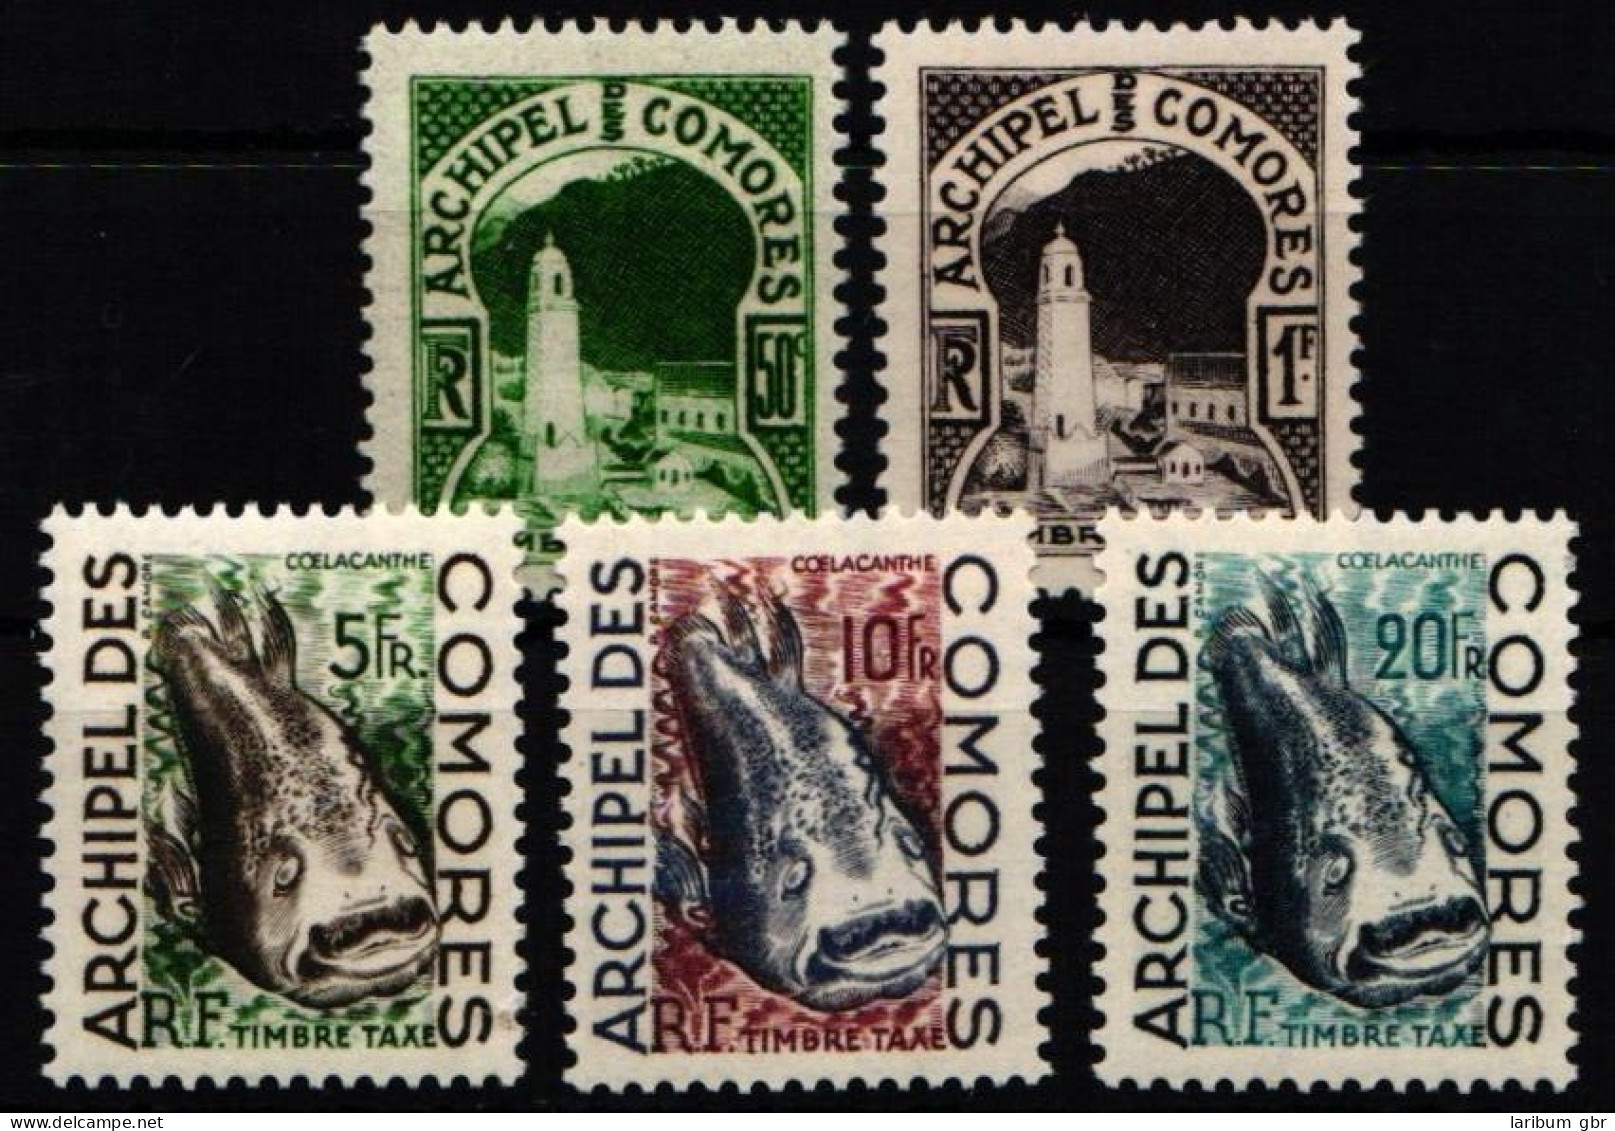 Komoren Portomarken 1-5 Postfrisch #NH360 - Comores (1975-...)